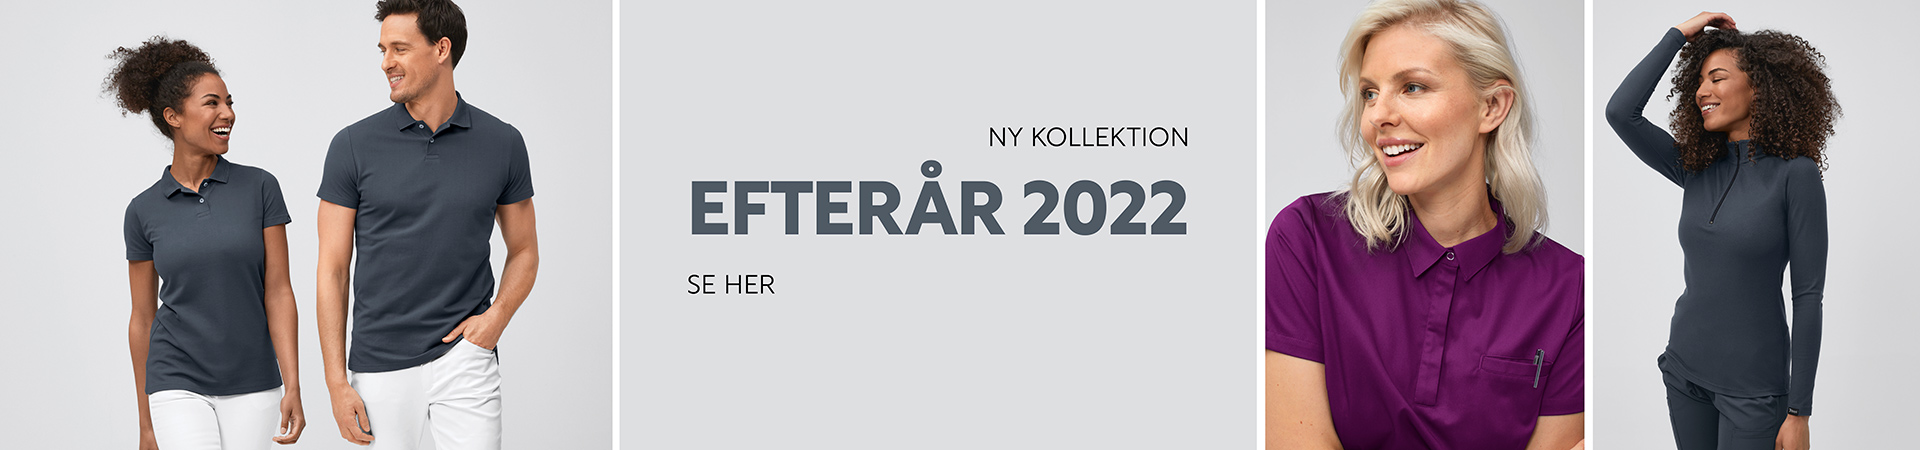 Ny Kollektion efterår 2022